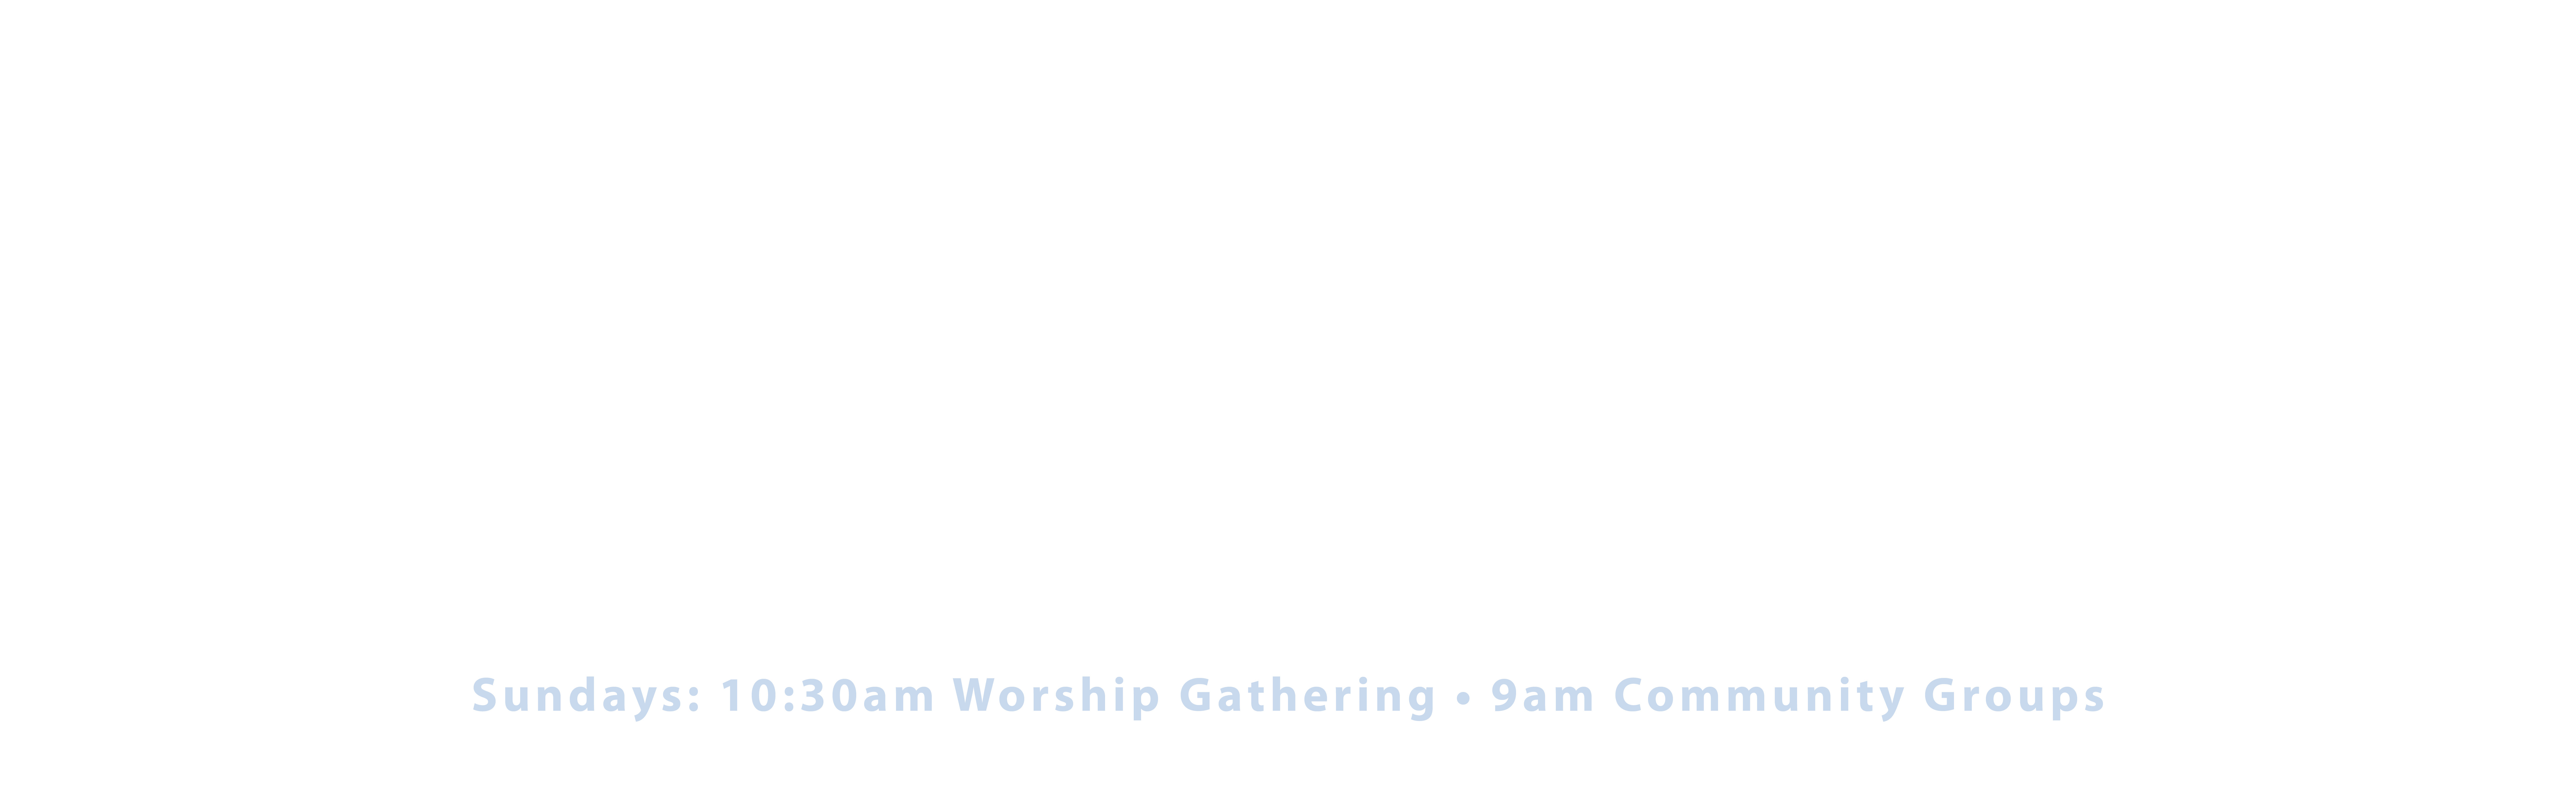 Welcome to West Jackson. Sundays: 10:30 AM Worship Gathering, 9 AM Community Groups